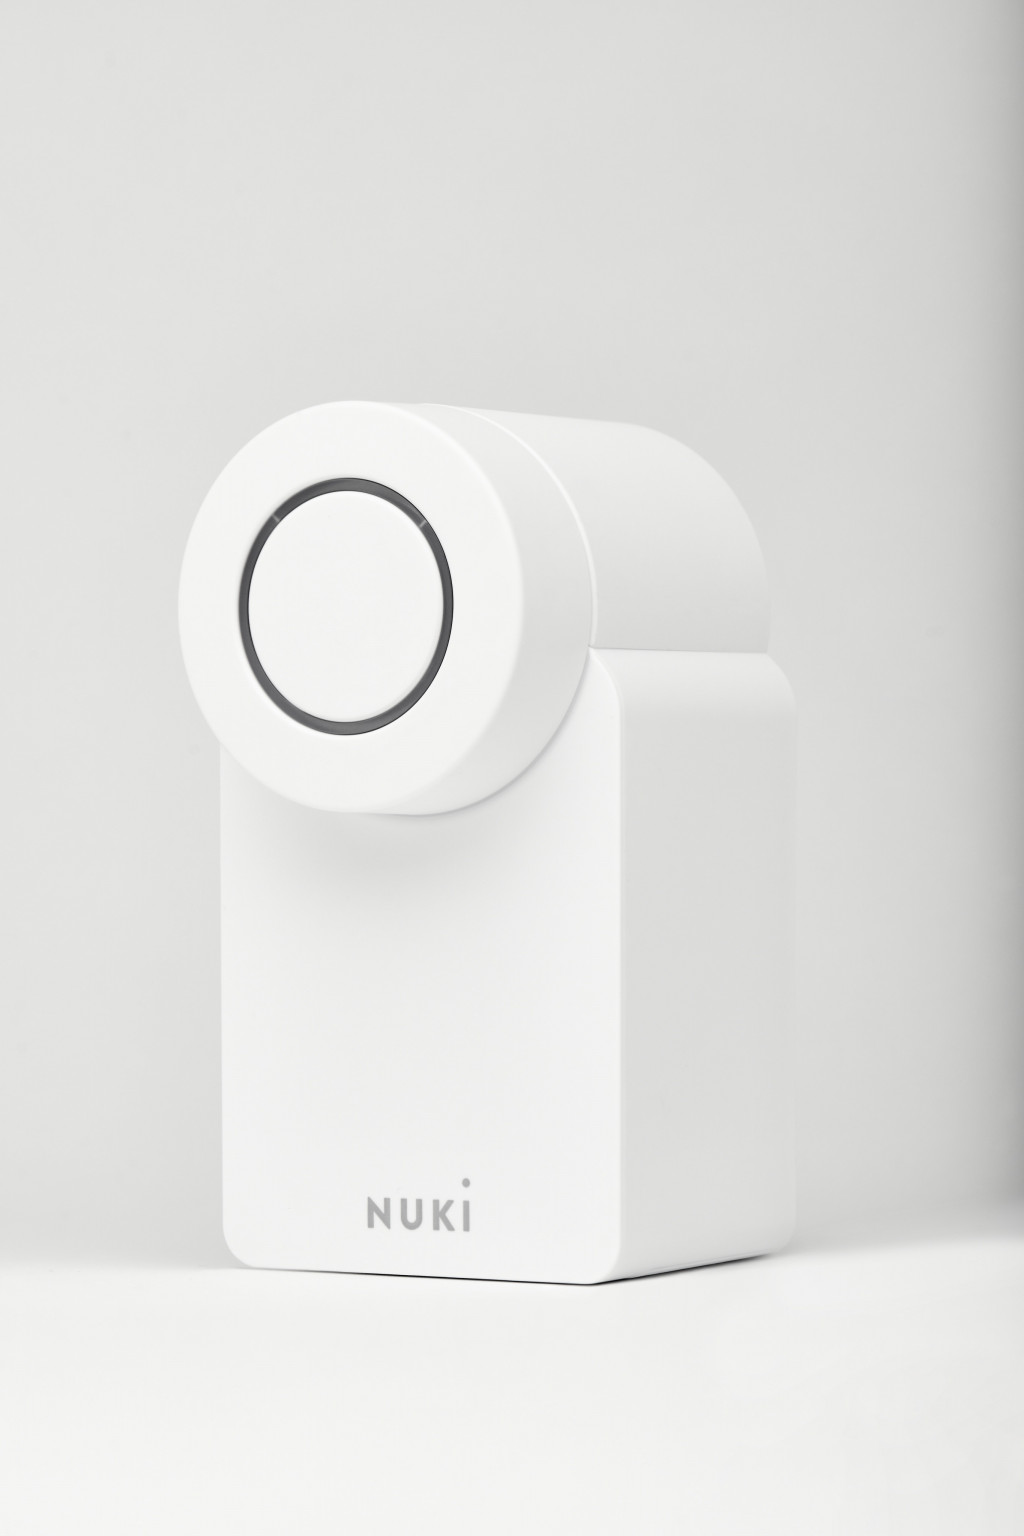 Nuki Smart Lock 4.0